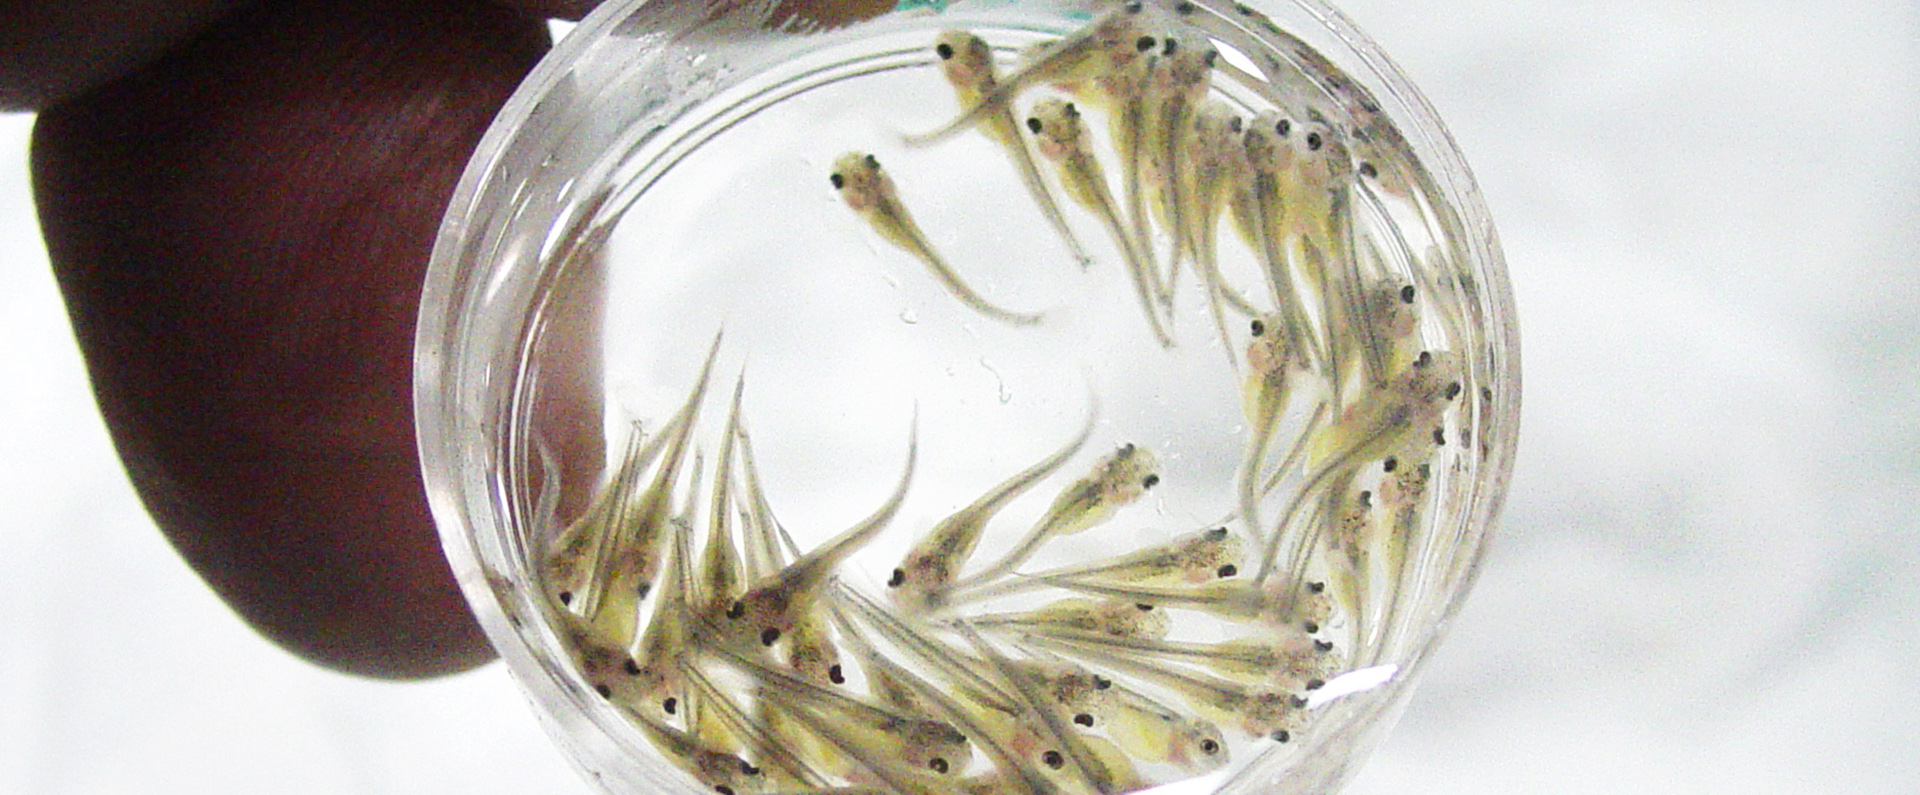 Newly hatched hybrid catfish fry 